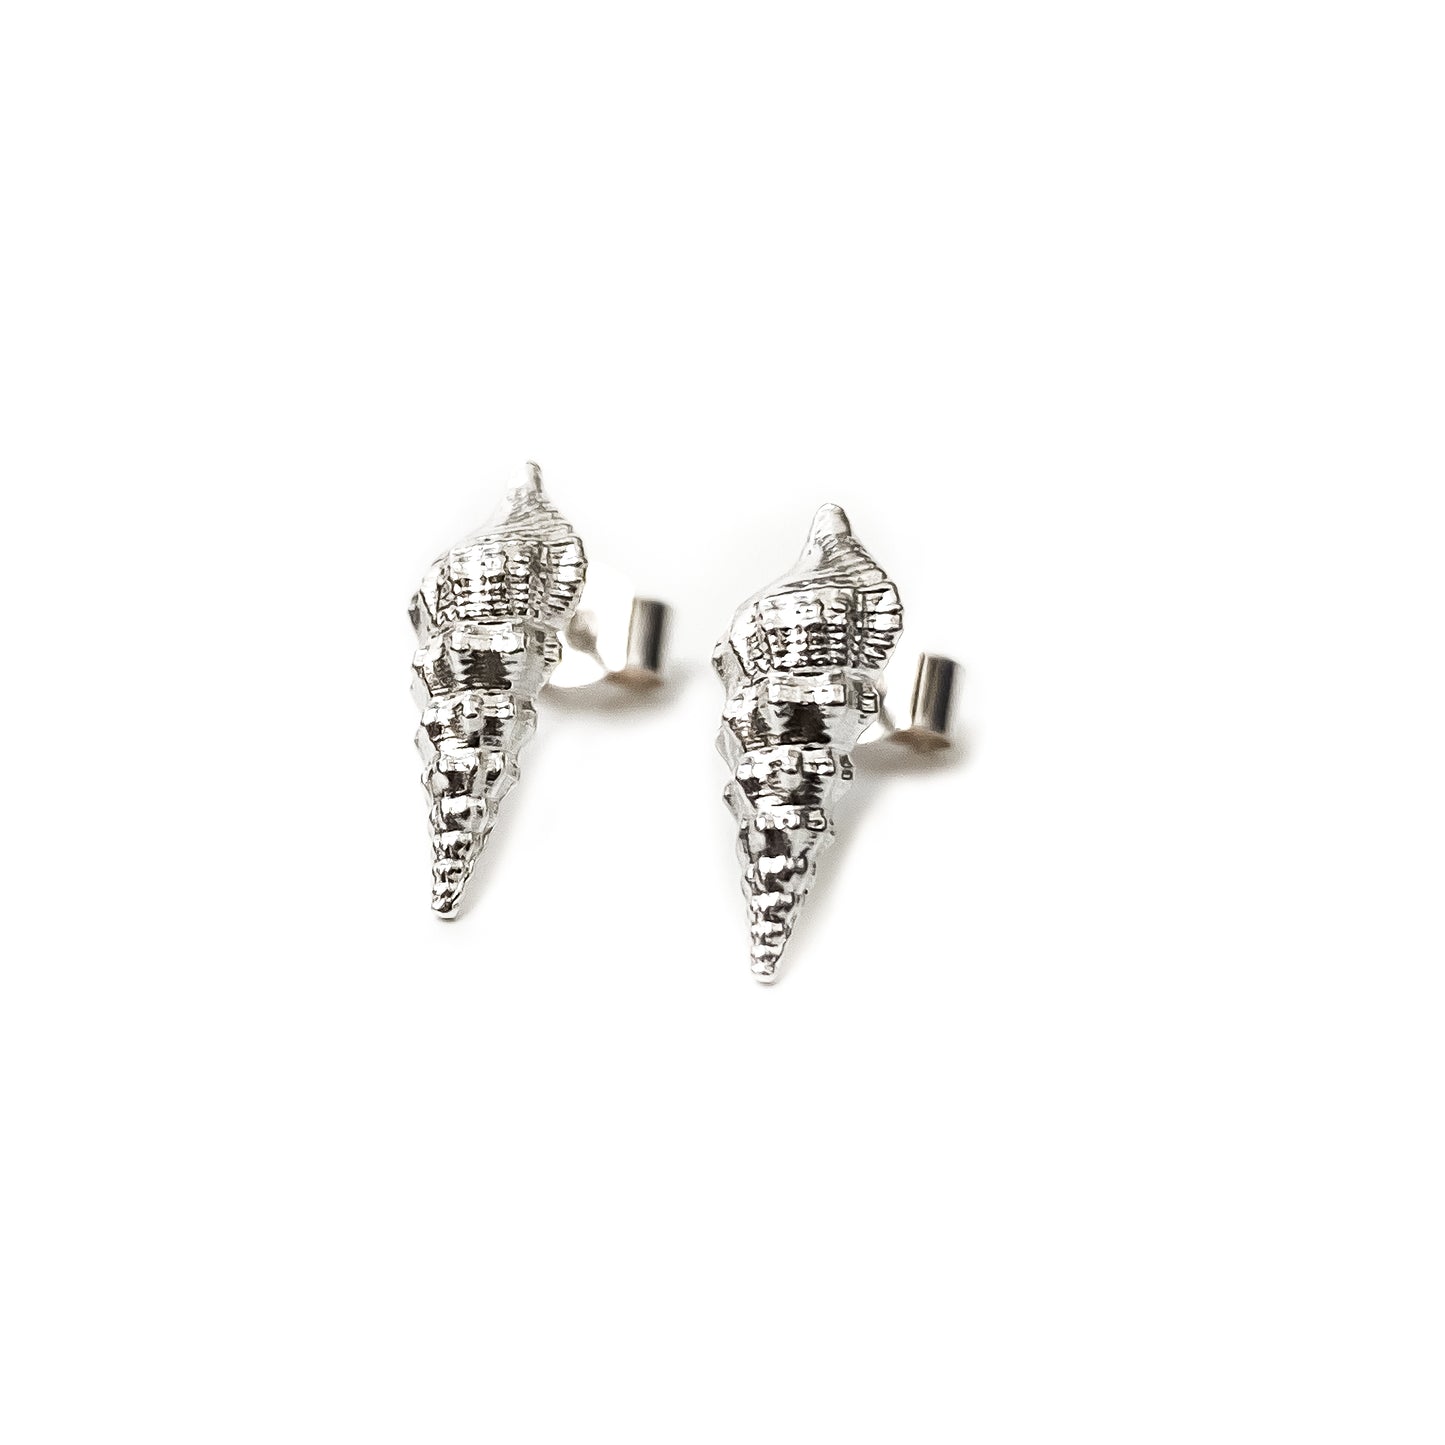 Turritella Shell Sterling Silver Stud Earrings